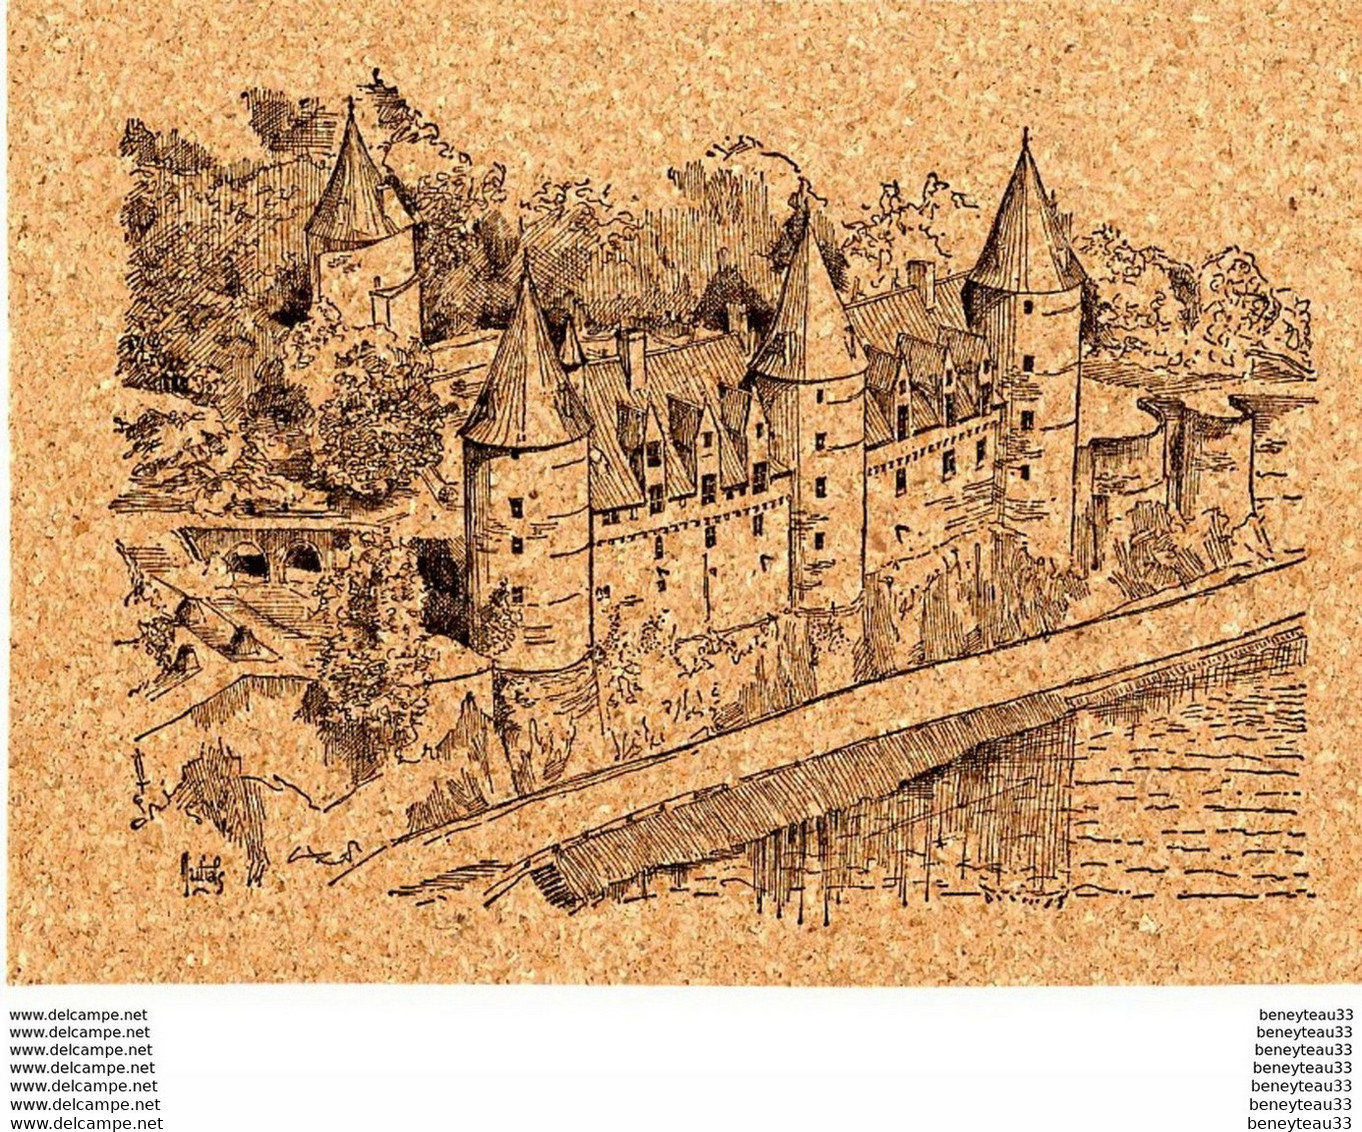 CP LIÈGE (Réf : Q199)  JOSSELIN (56 MORBIHAN) Le Château (XIV°) - Josselin